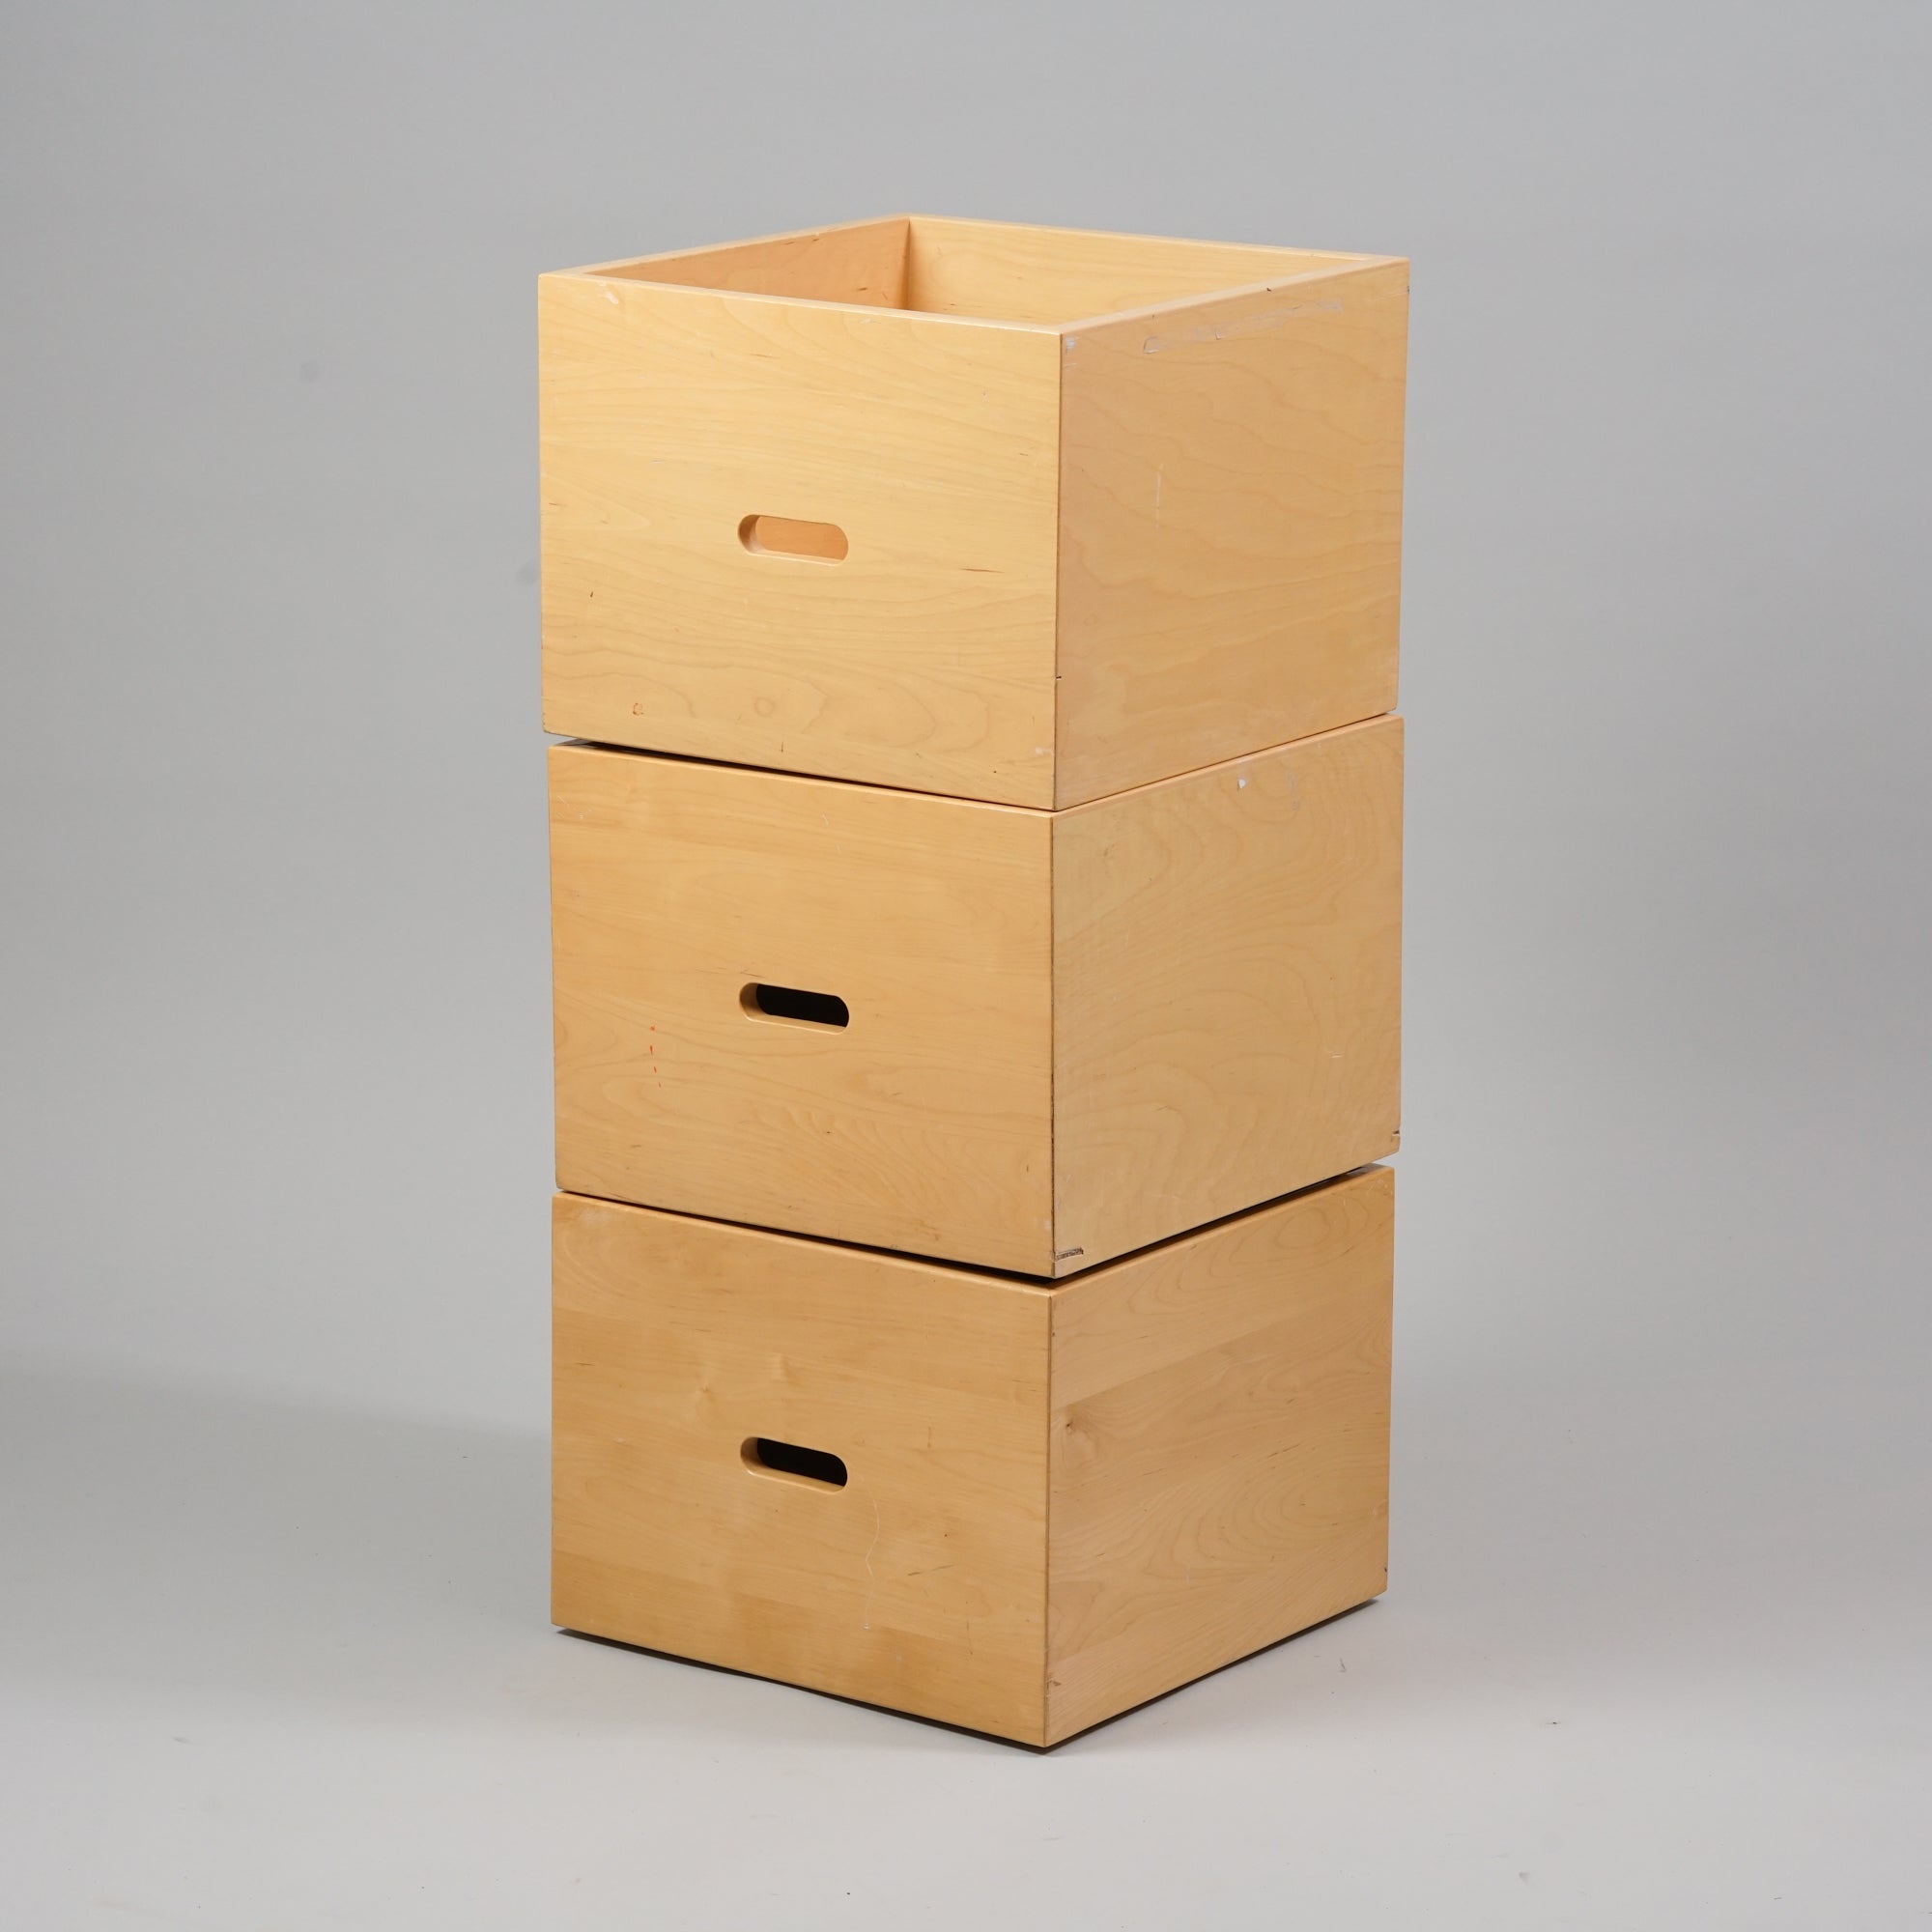 Koivusta tehty neliön muotoinen laatikko, jossa kolo kahvana. Laatikon pohjassa on rullat.